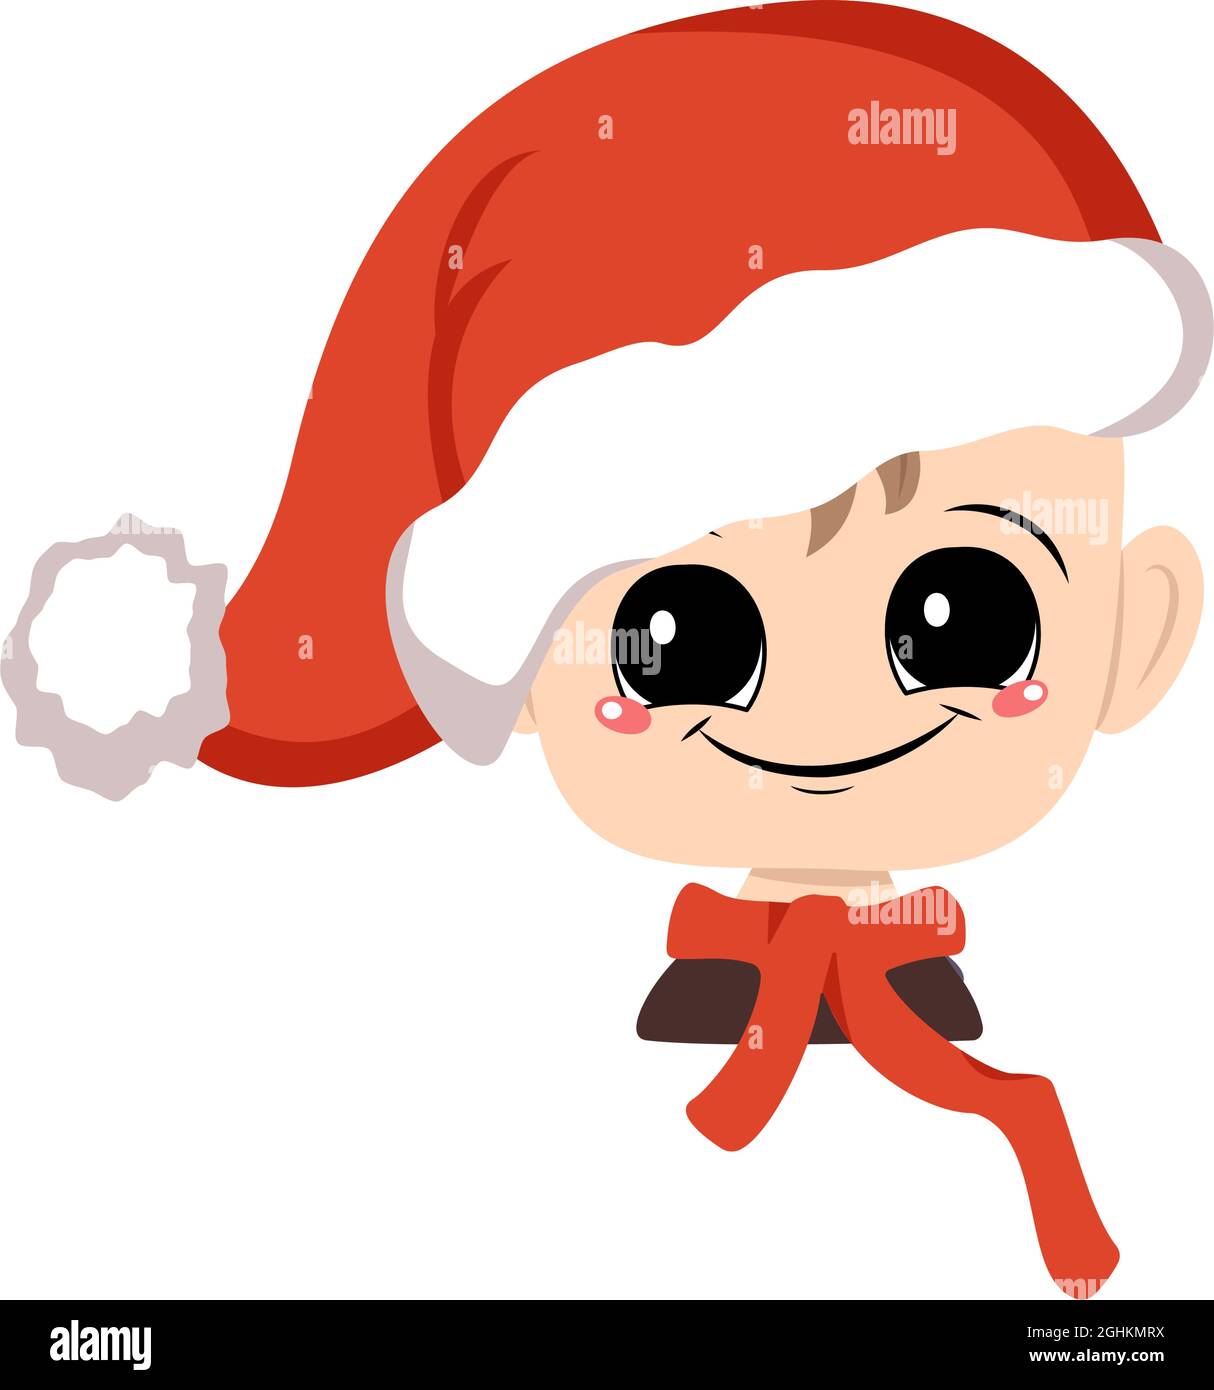 Avatar di un bambino con grandi occhi e un ampio sorriso felice in un cappello rosso di Santa. Carino ragazzo con un volto gioioso in un costume festivo per Capodanno e Natale. Testa di bambino adorabile con gioie emozioni Illustrazione Vettoriale